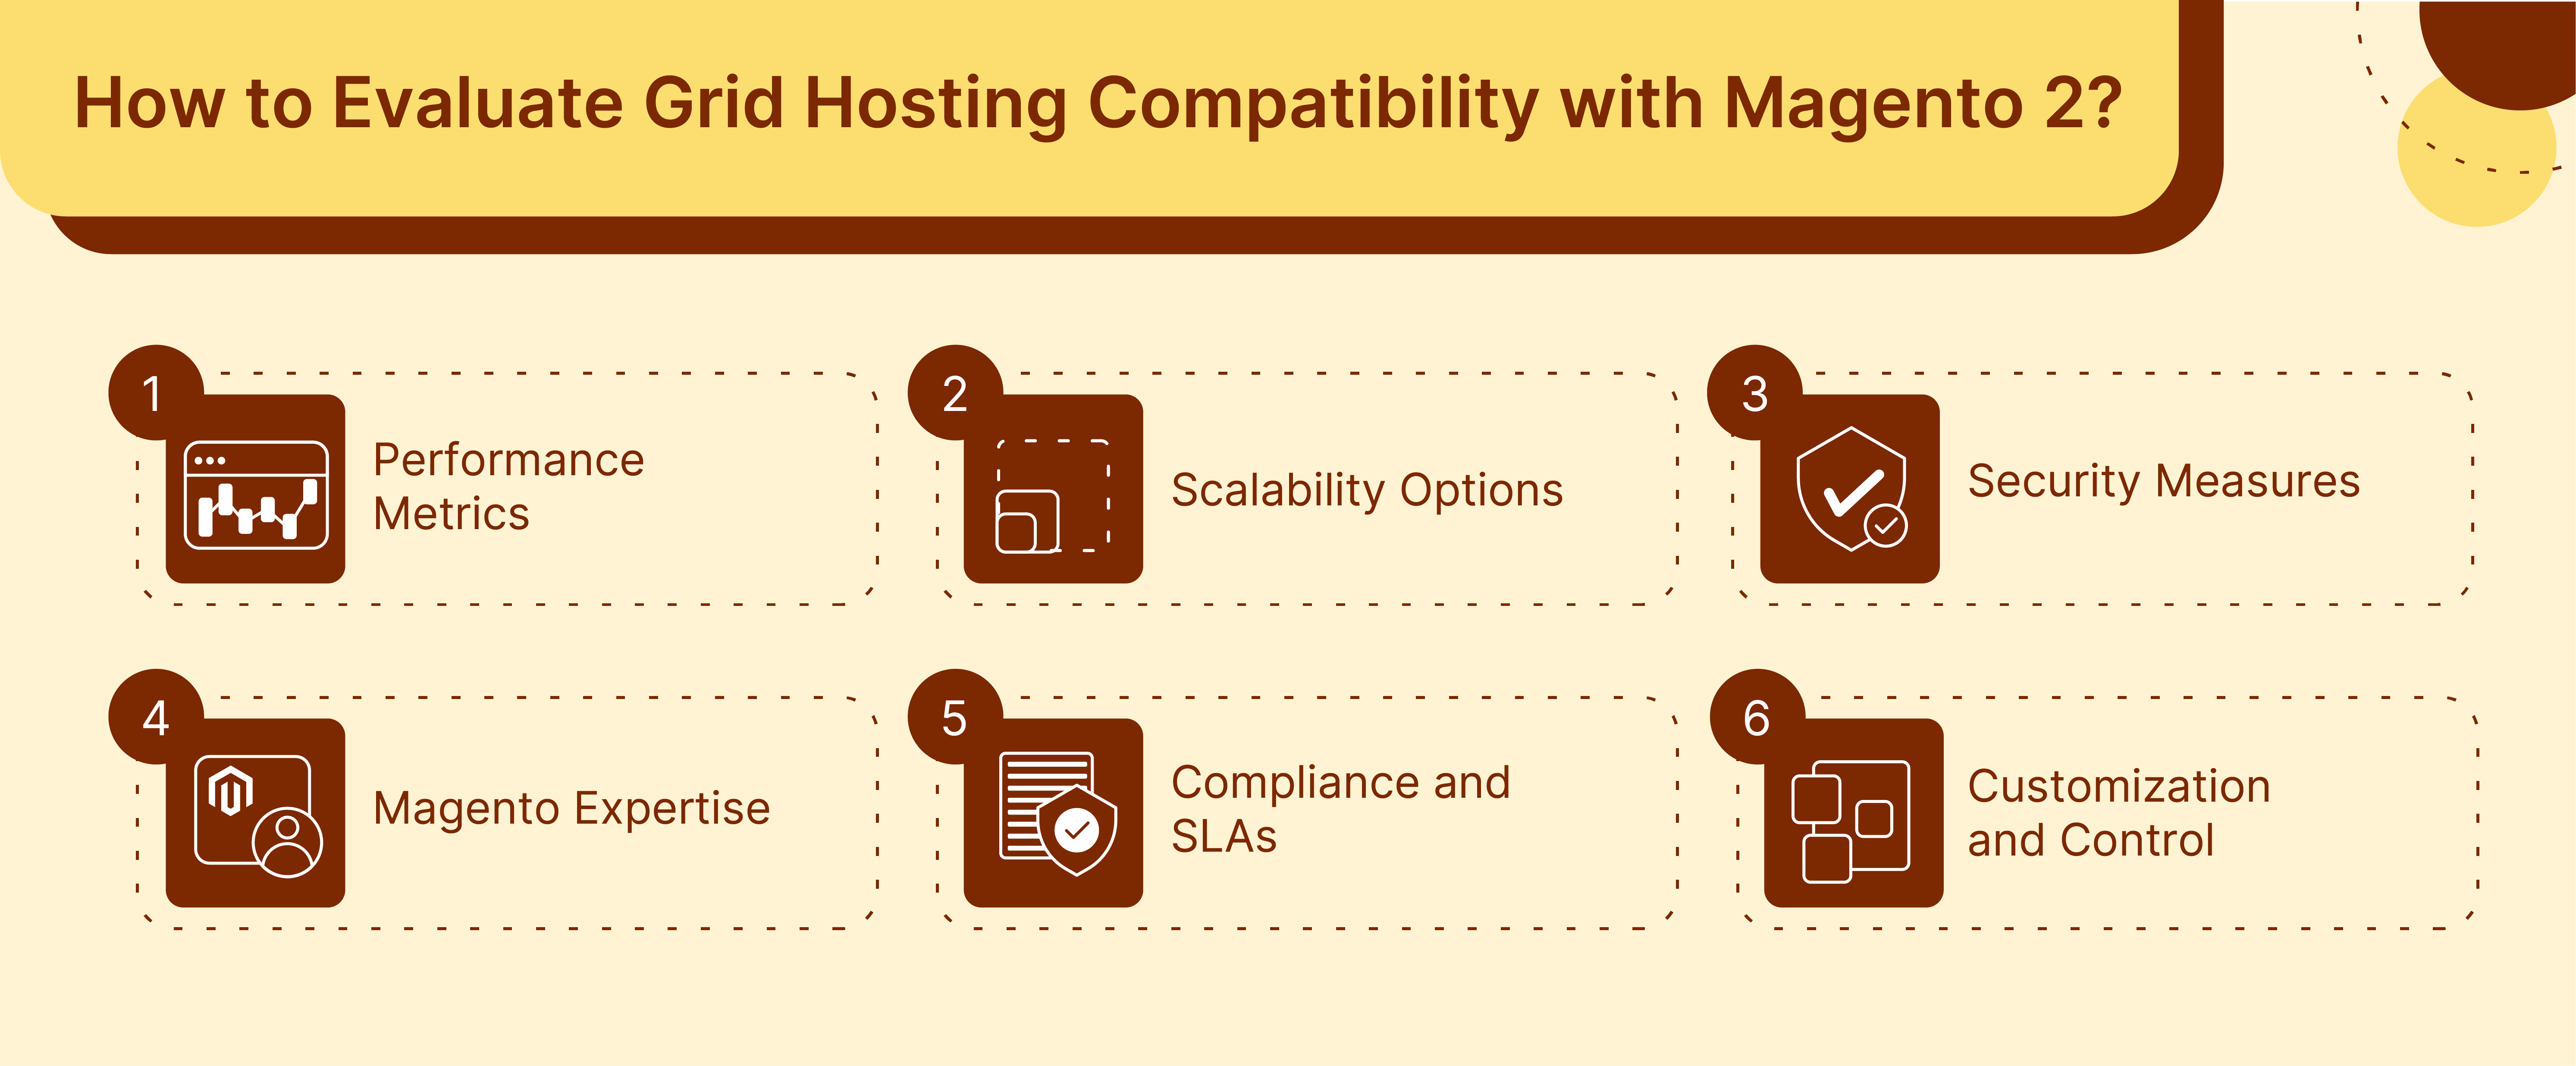 Criteria for assessing grid hosting suitability for Magento 2 platforms